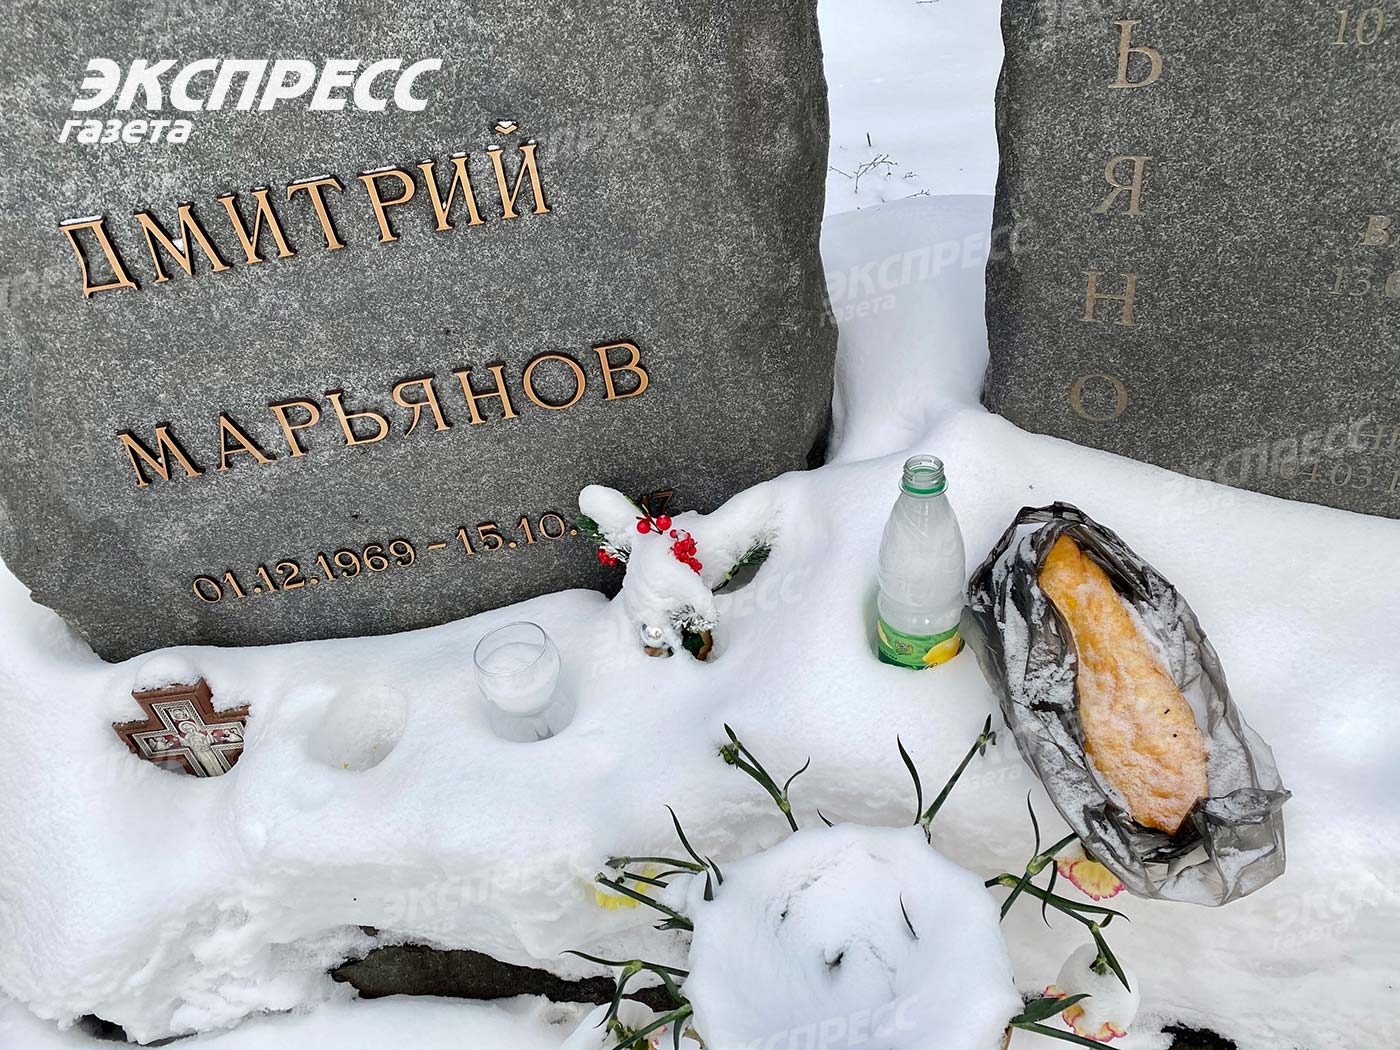 Могила Дмитрия Марьянова стала местом сборища алкоголиков и бездомных